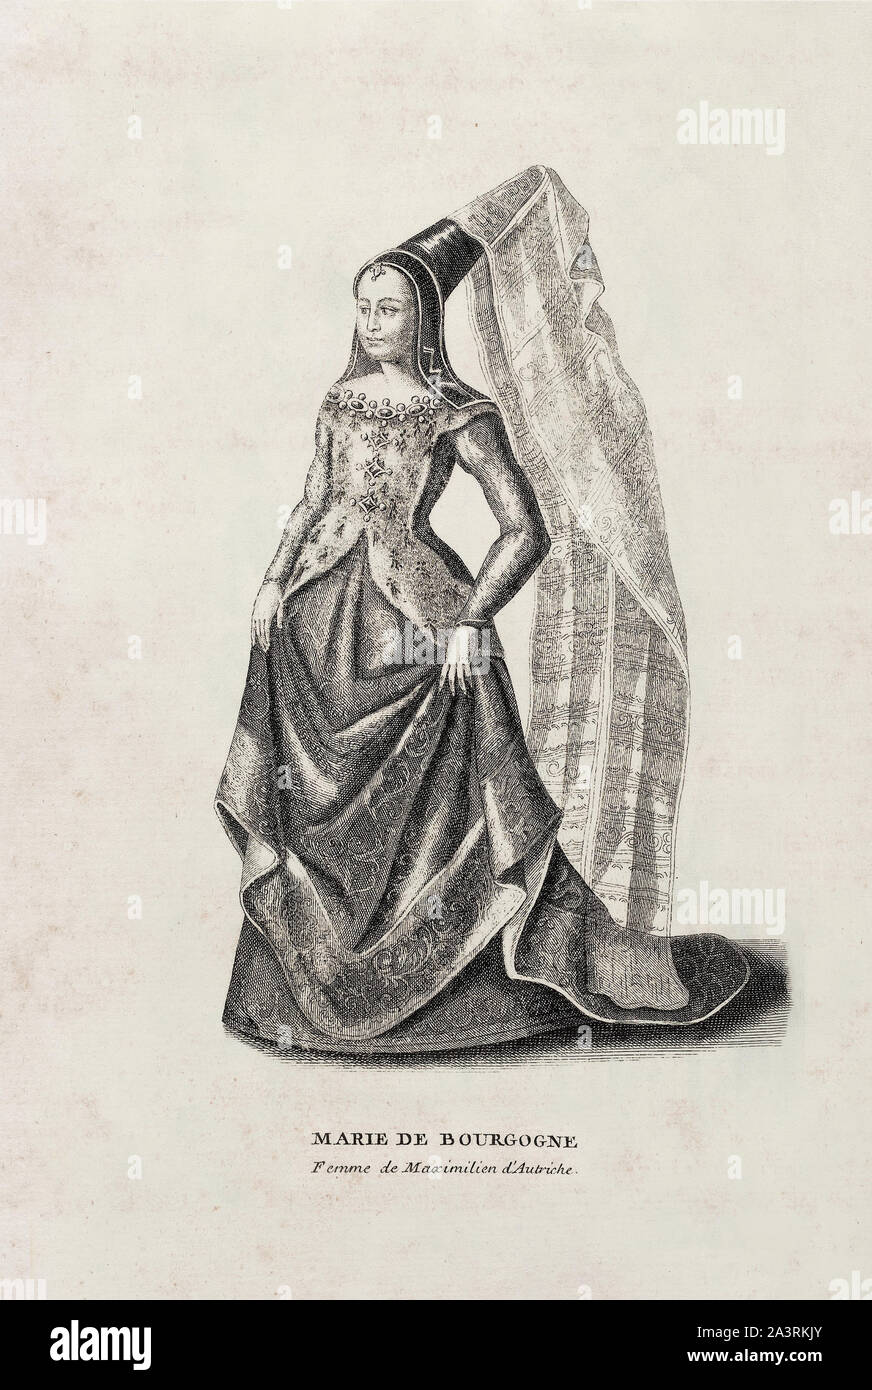 Maria (Marie; 1457 - 1482), duchessa di Borgogna, regnò su molti dei territori del Ducato di Borgogna, ora principalmente in Francia e la bassa countr Foto Stock